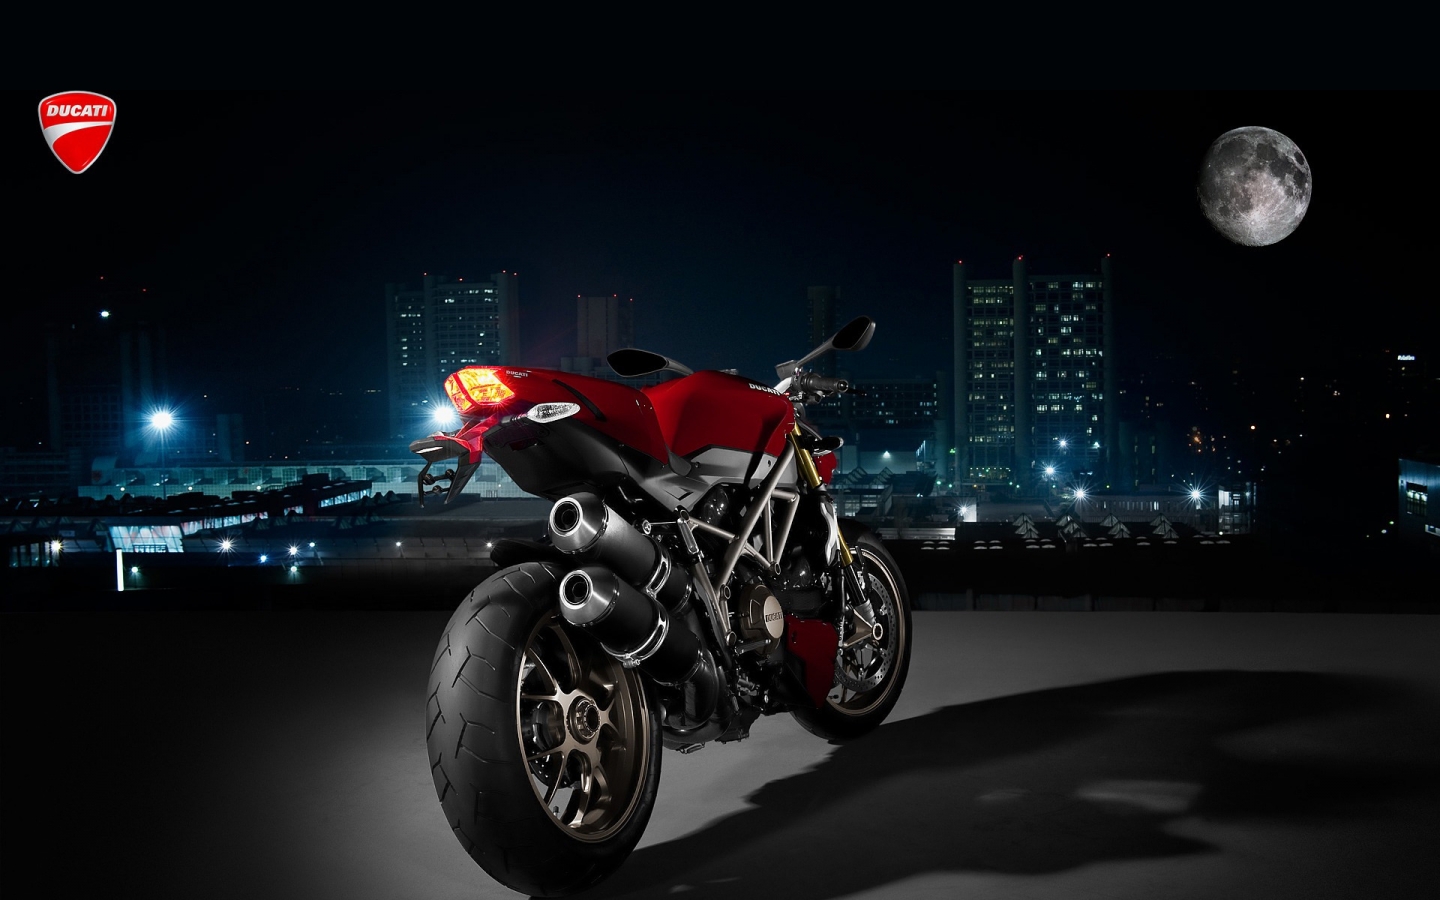 Ducati Super Sport Rear Angle for 1440 x 900 widescreen resolution